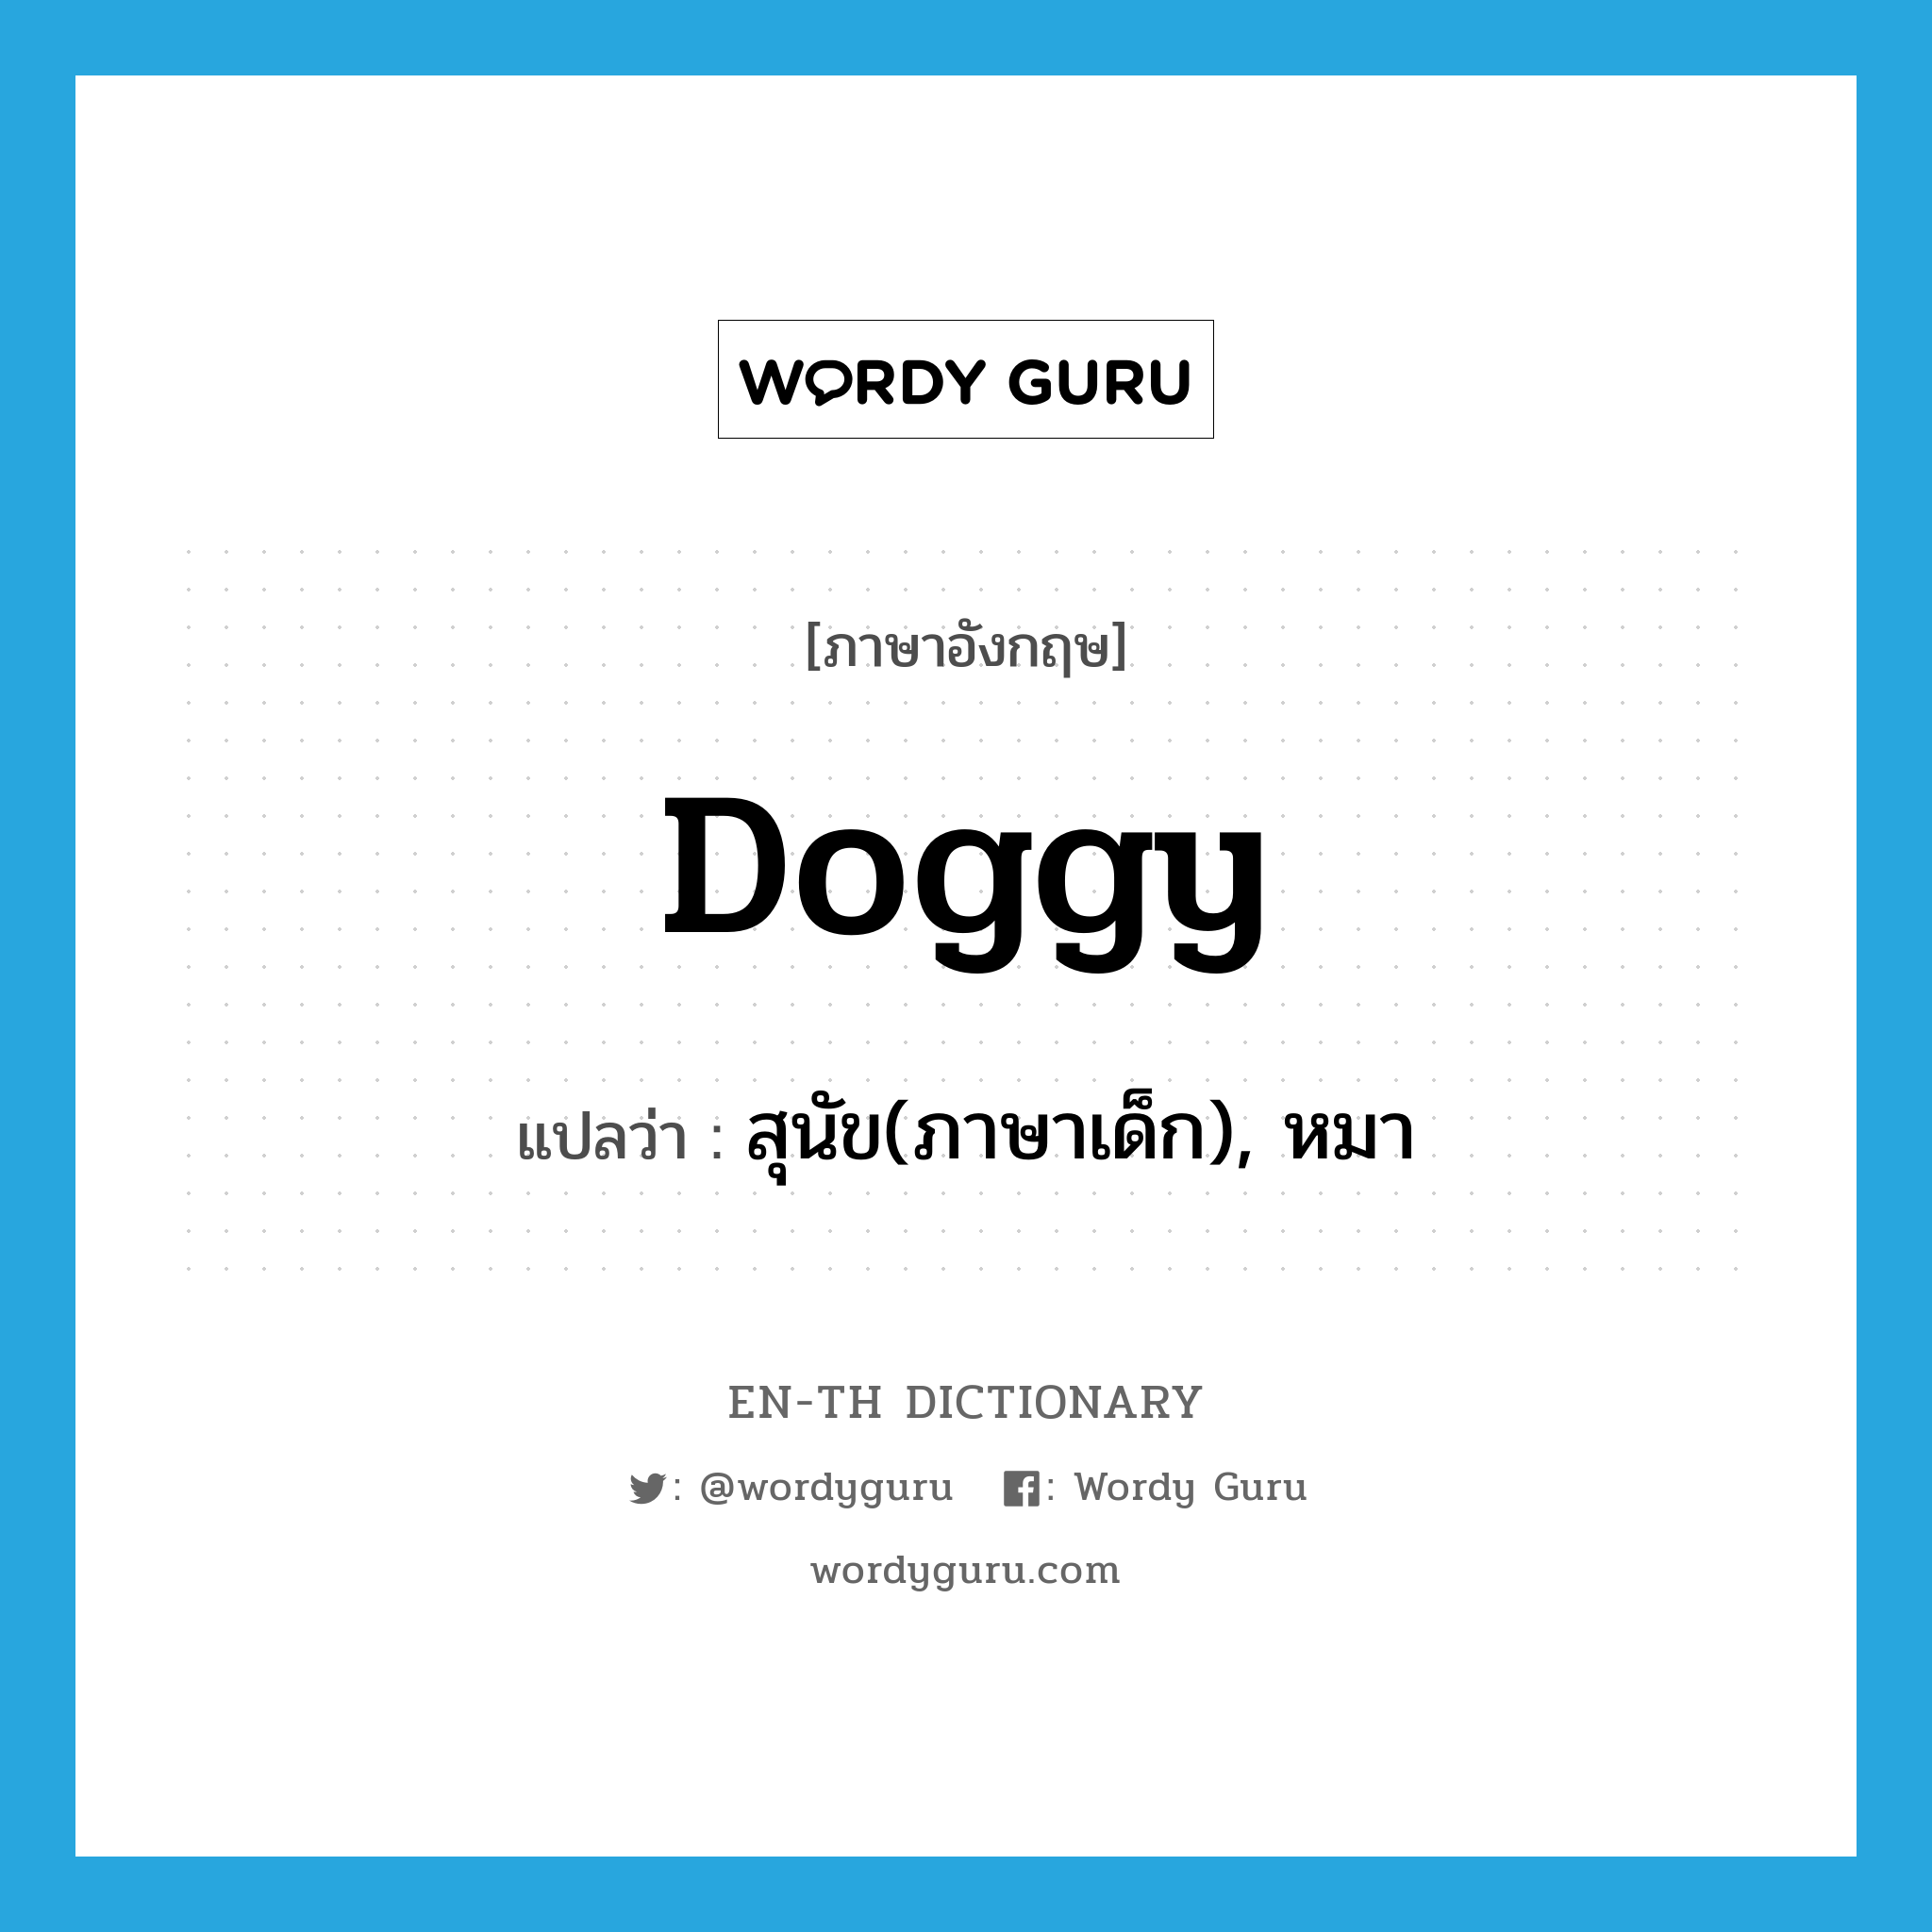 สุนัข(ภาษาเด็ก), หมา ภาษาอังกฤษ?, คำศัพท์ภาษาอังกฤษ สุนัข(ภาษาเด็ก), หมา แปลว่า doggy ประเภท N หมวด N